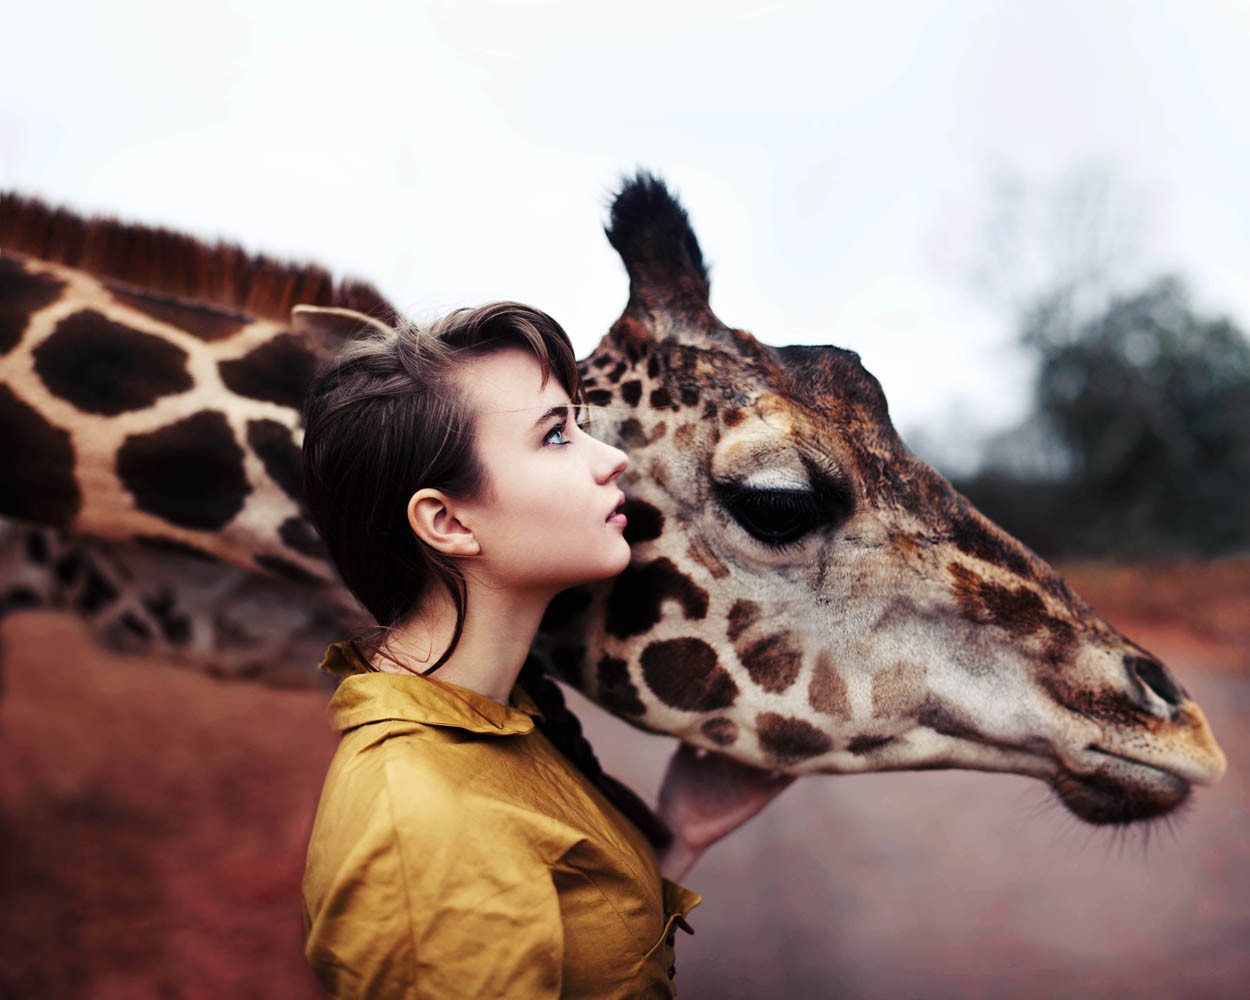 People 1250x1000 women brunette animals giraffes blue eyes women outdoors shirt mammals face profile looking up